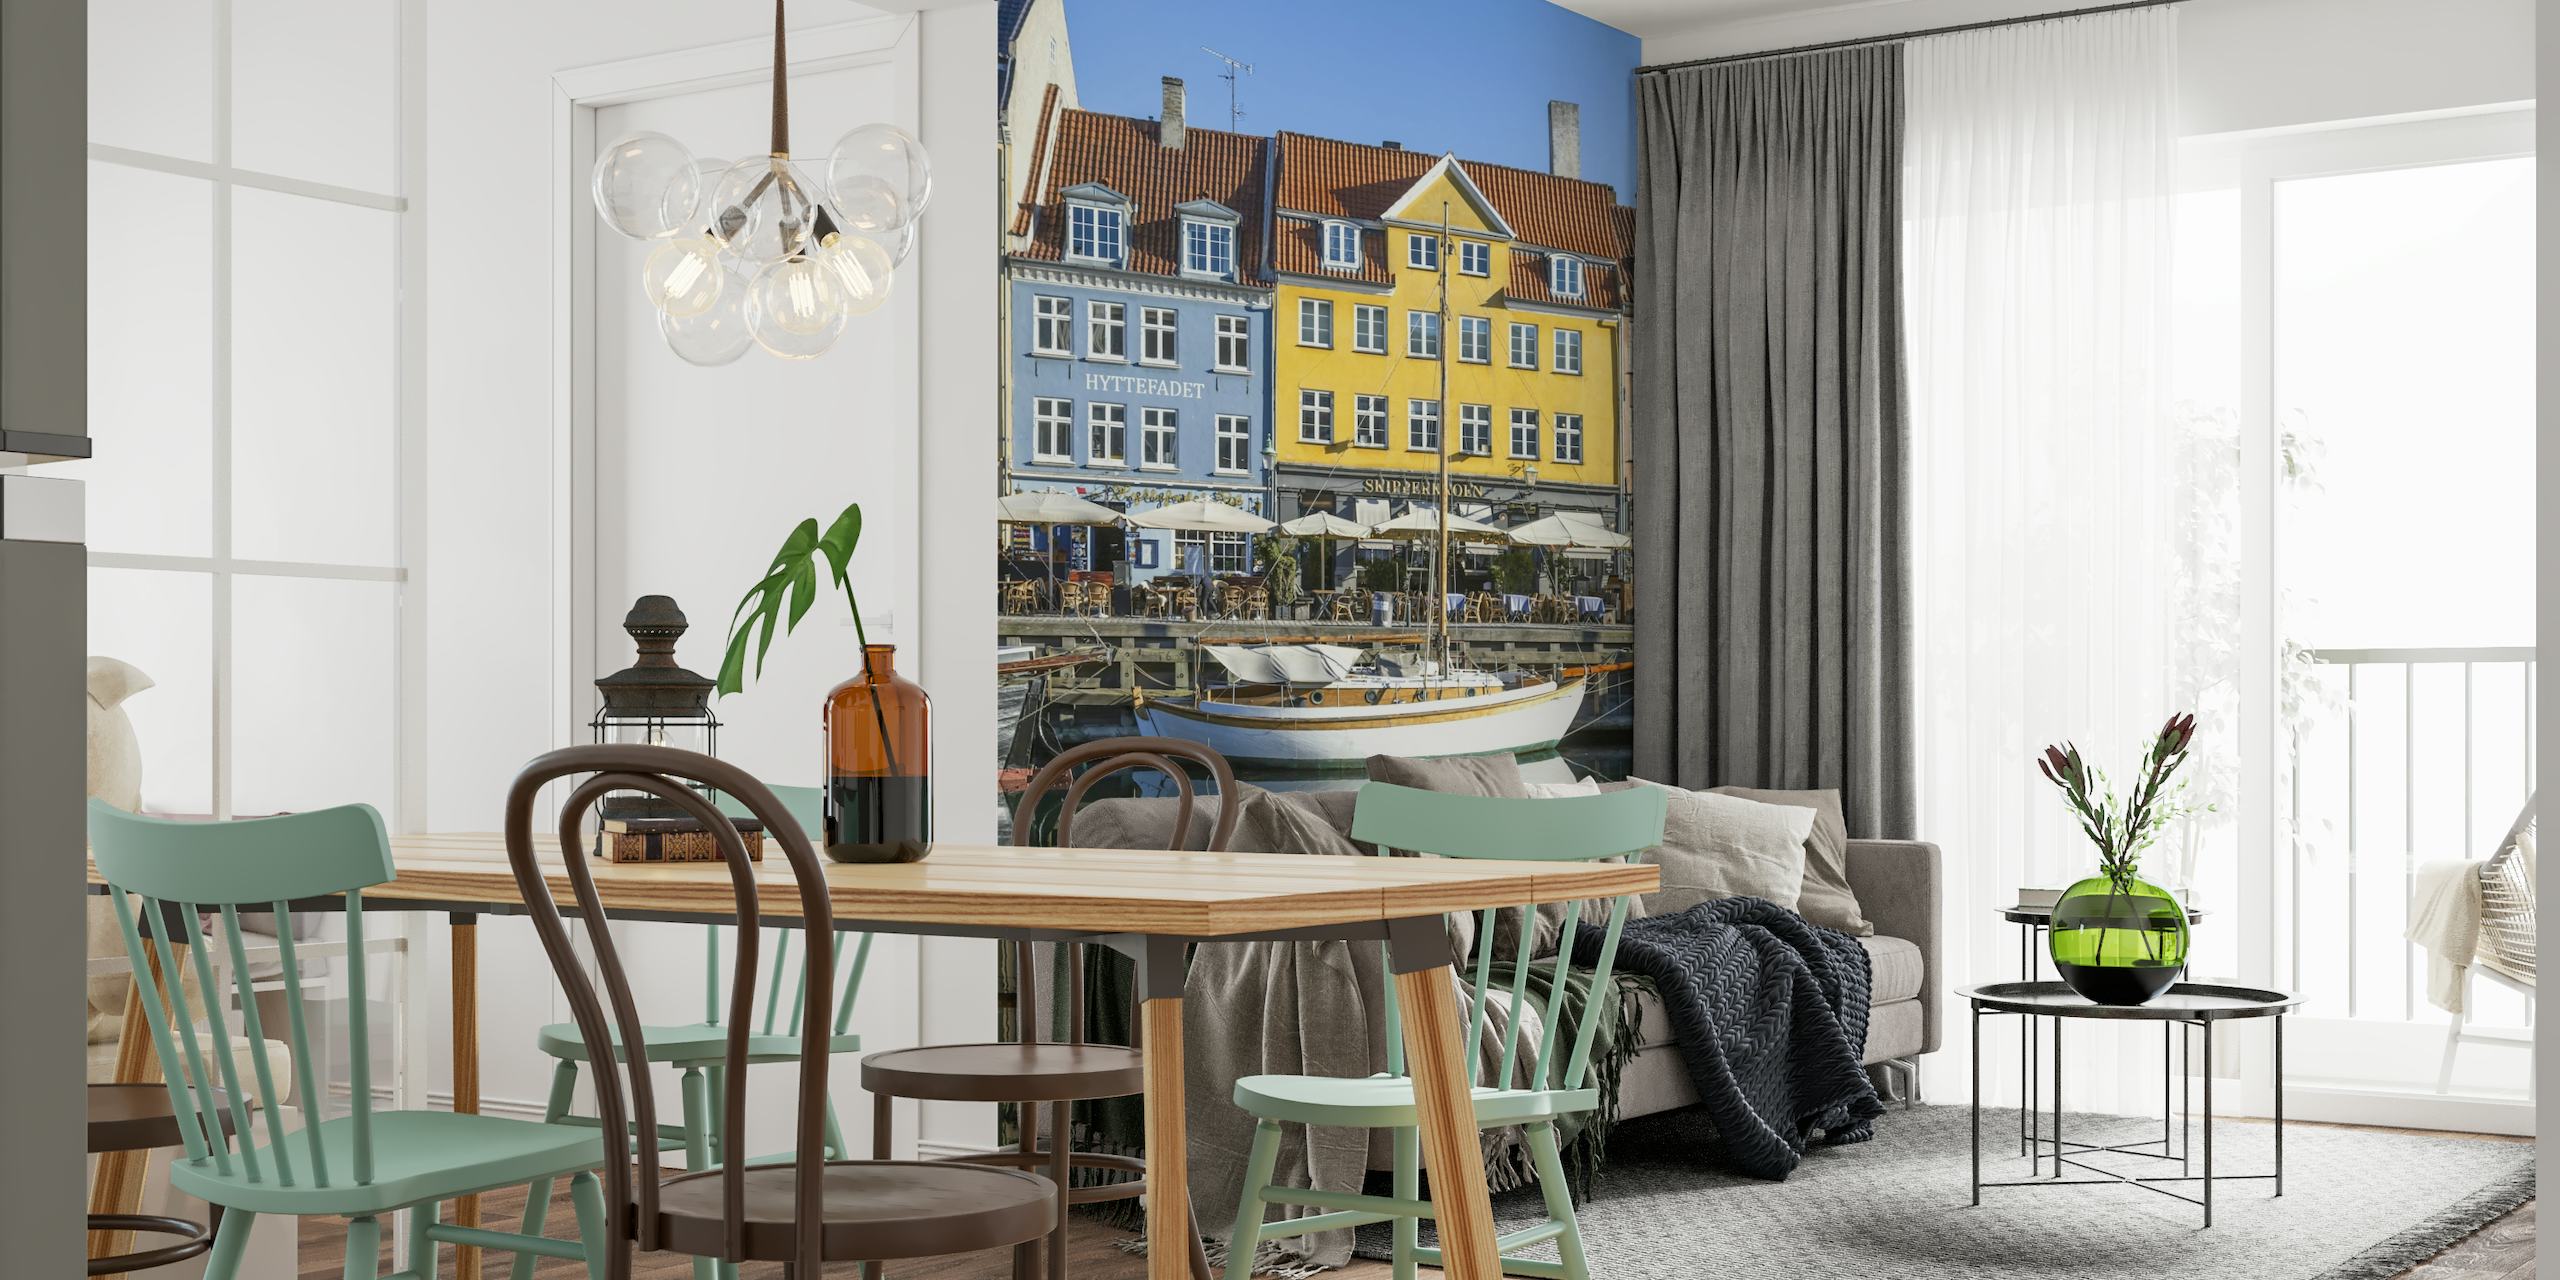 COPENHAGEN Quiet Nyhavn wallpaper